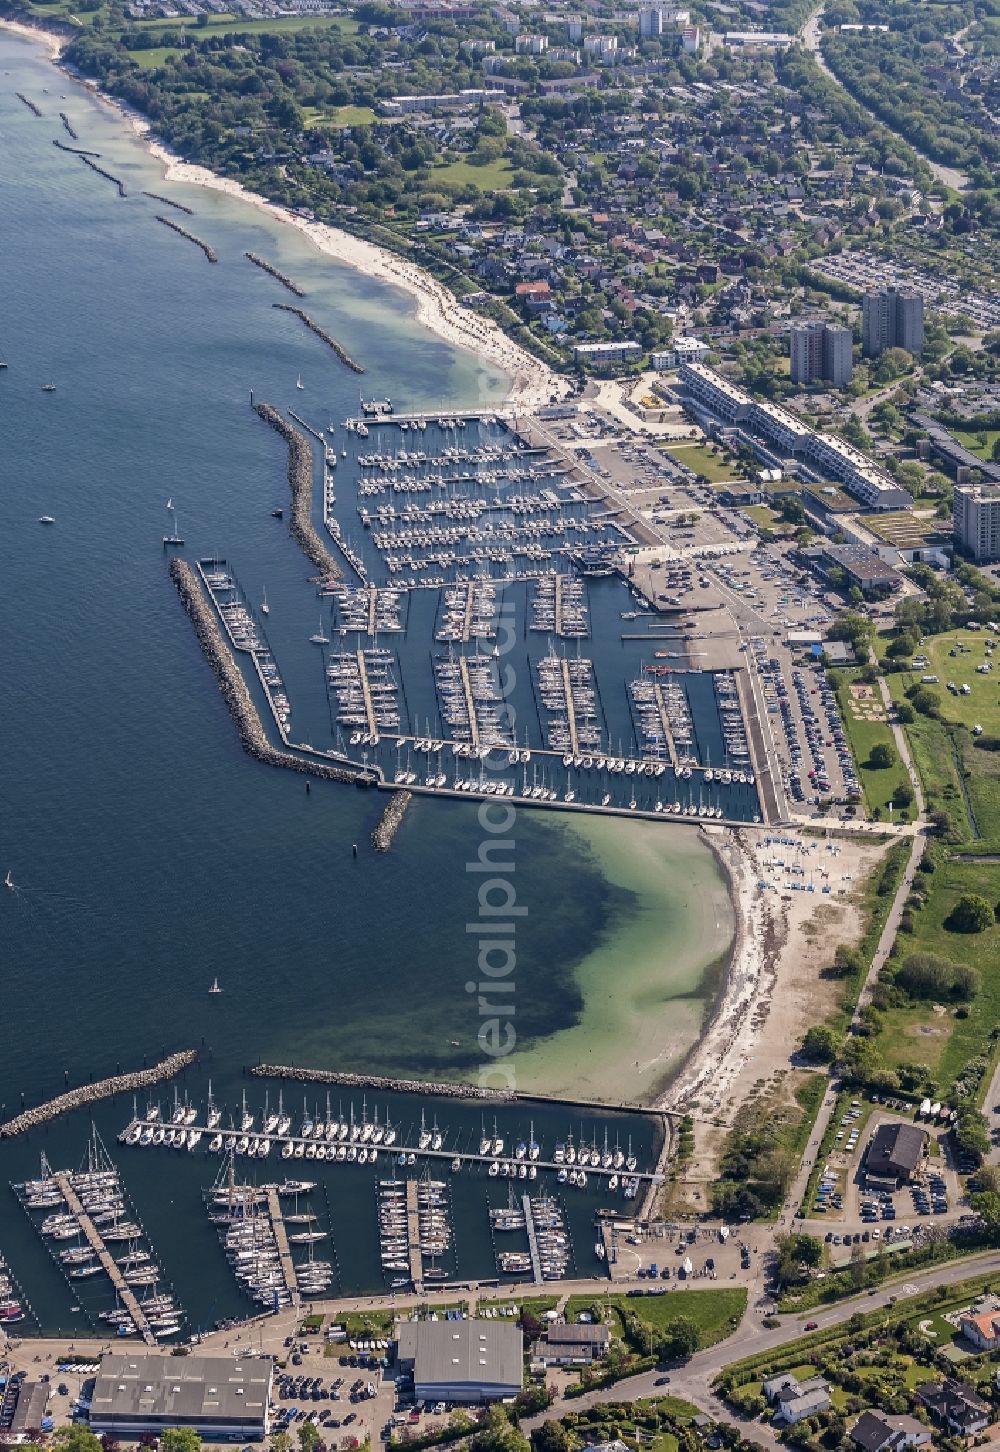 Aerial photograph Strande - Marinas Schilksee and Strande in Kiel in Schleswig-Holstein